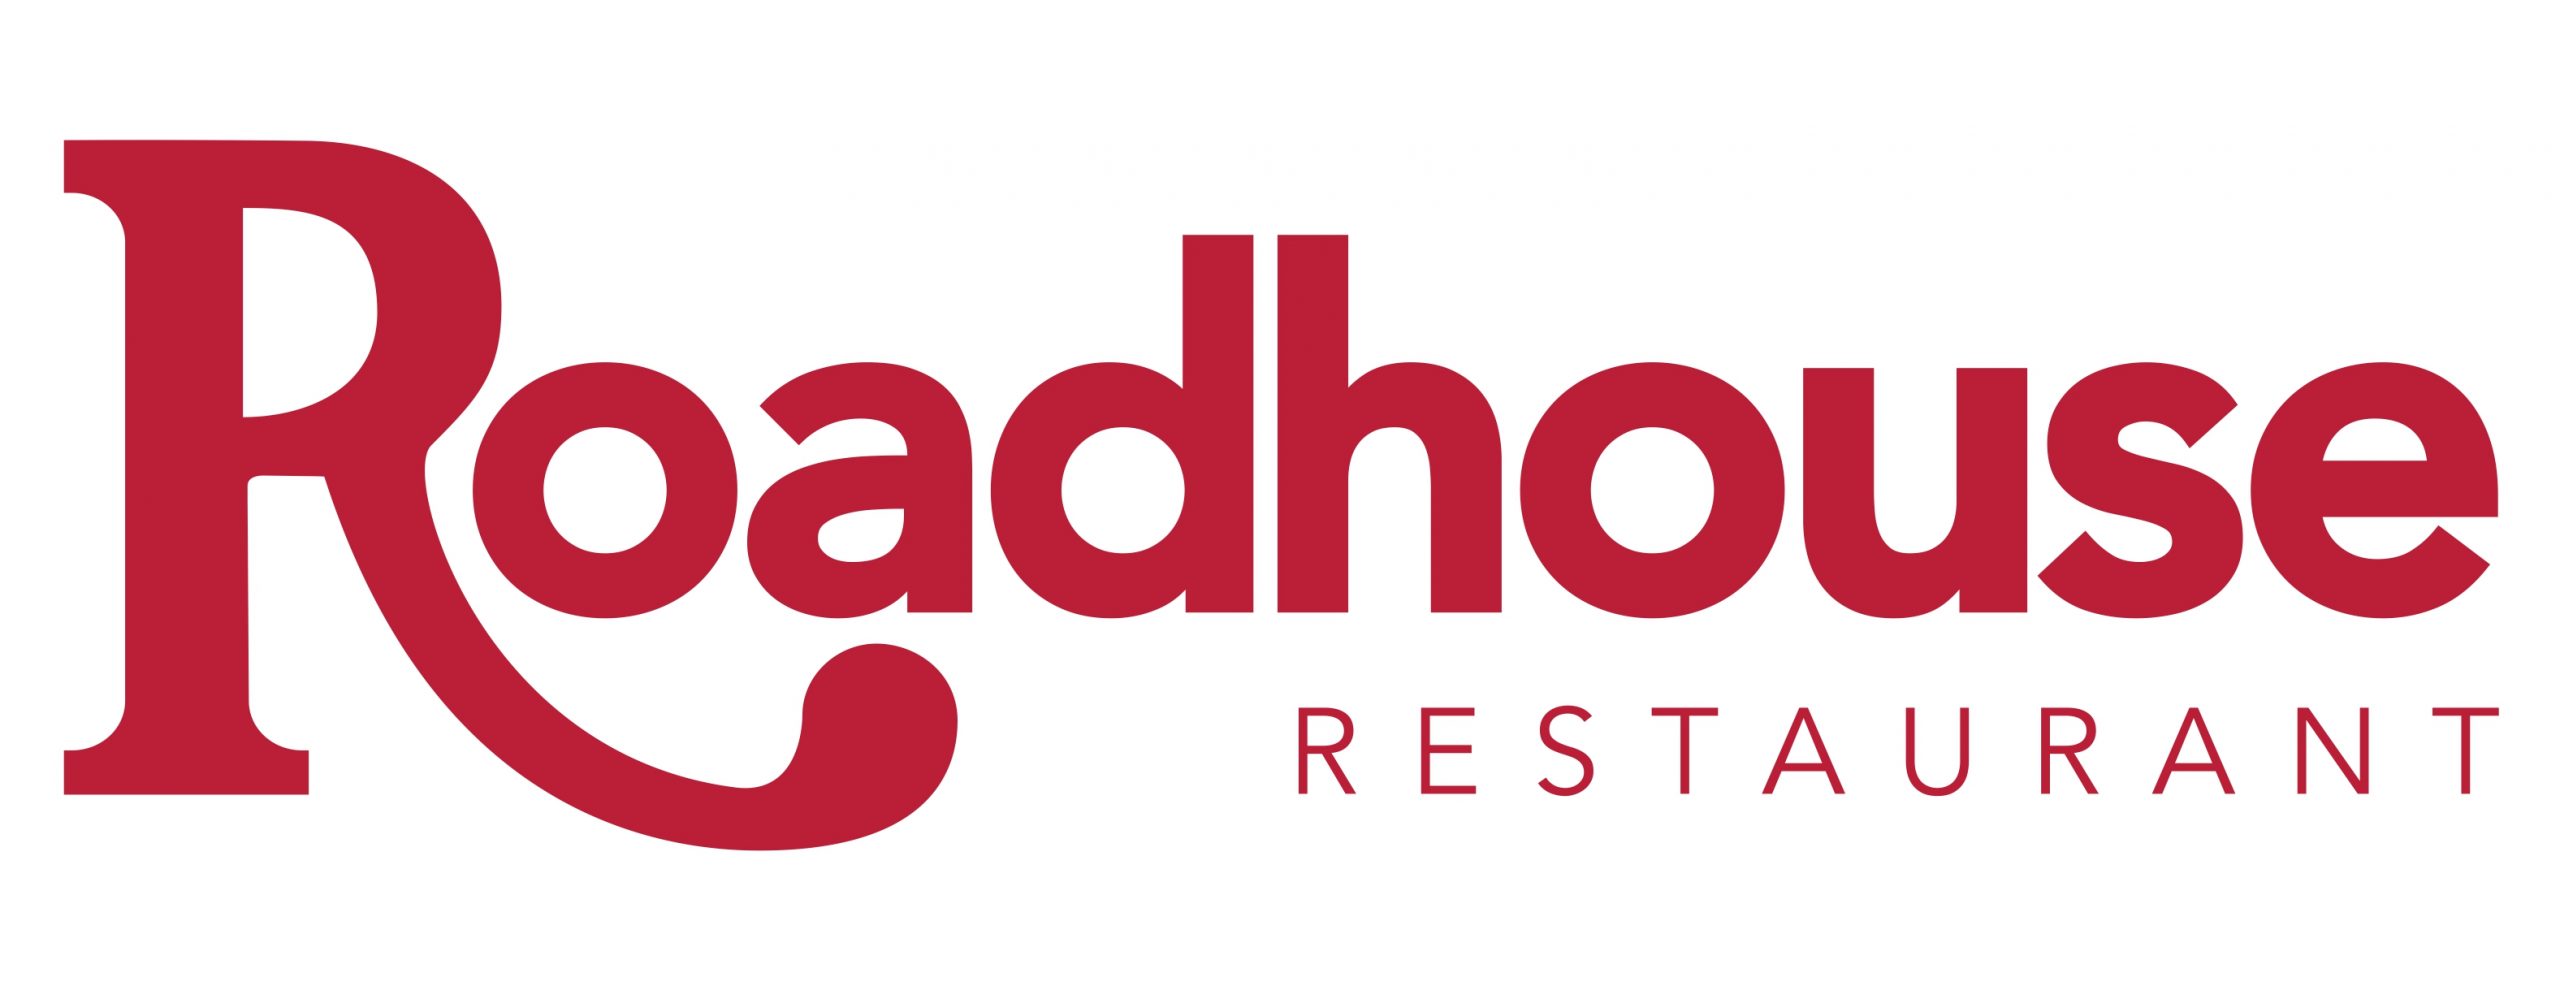 logo_roadhouse_page-0001